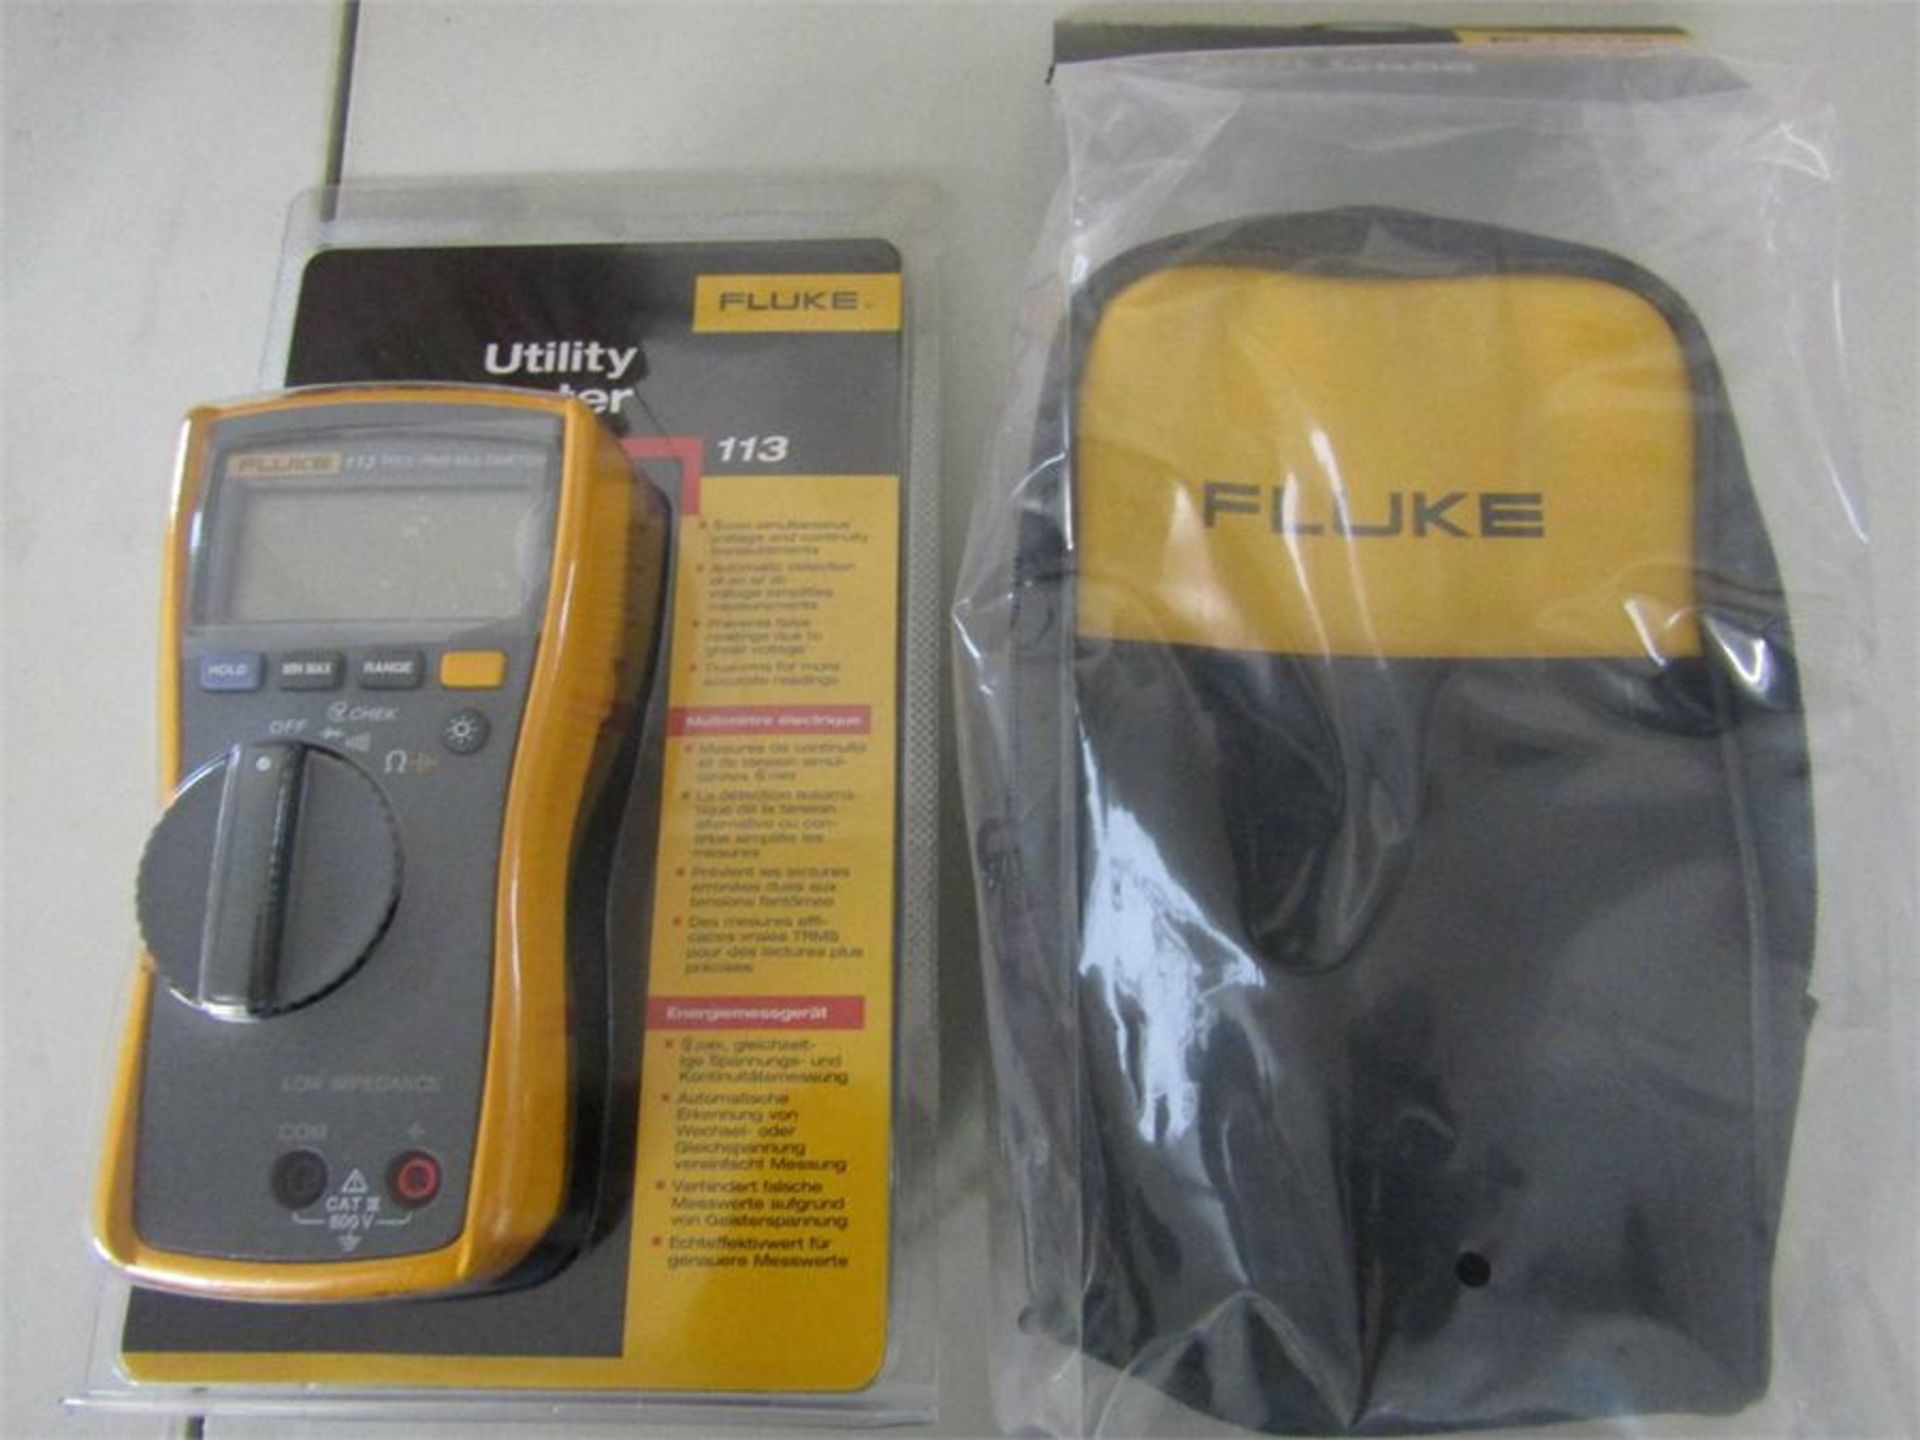 FLUKE 113 / C25 EUR Utility Multimeter Kit - Image 2 of 2